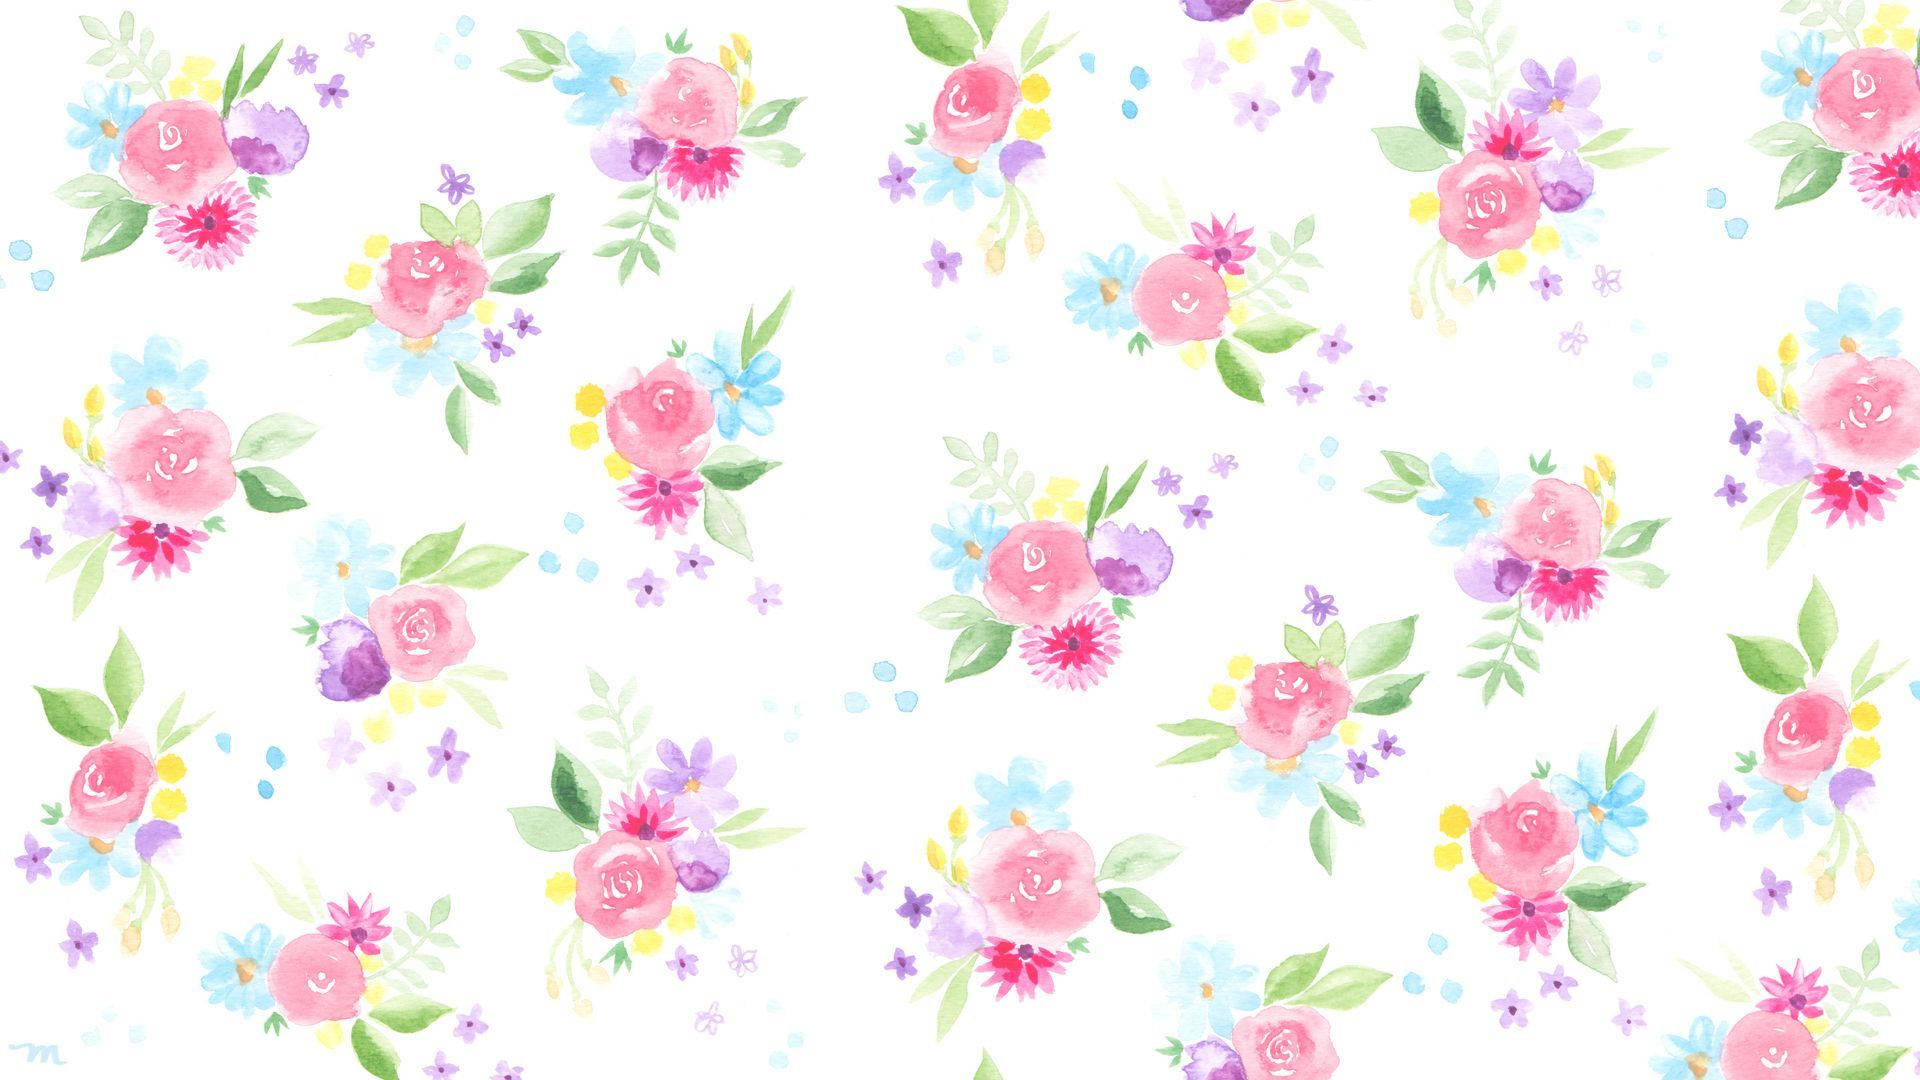 Caption: Vibrant Watercolor Floral Desktop Wallpaper Wallpaper